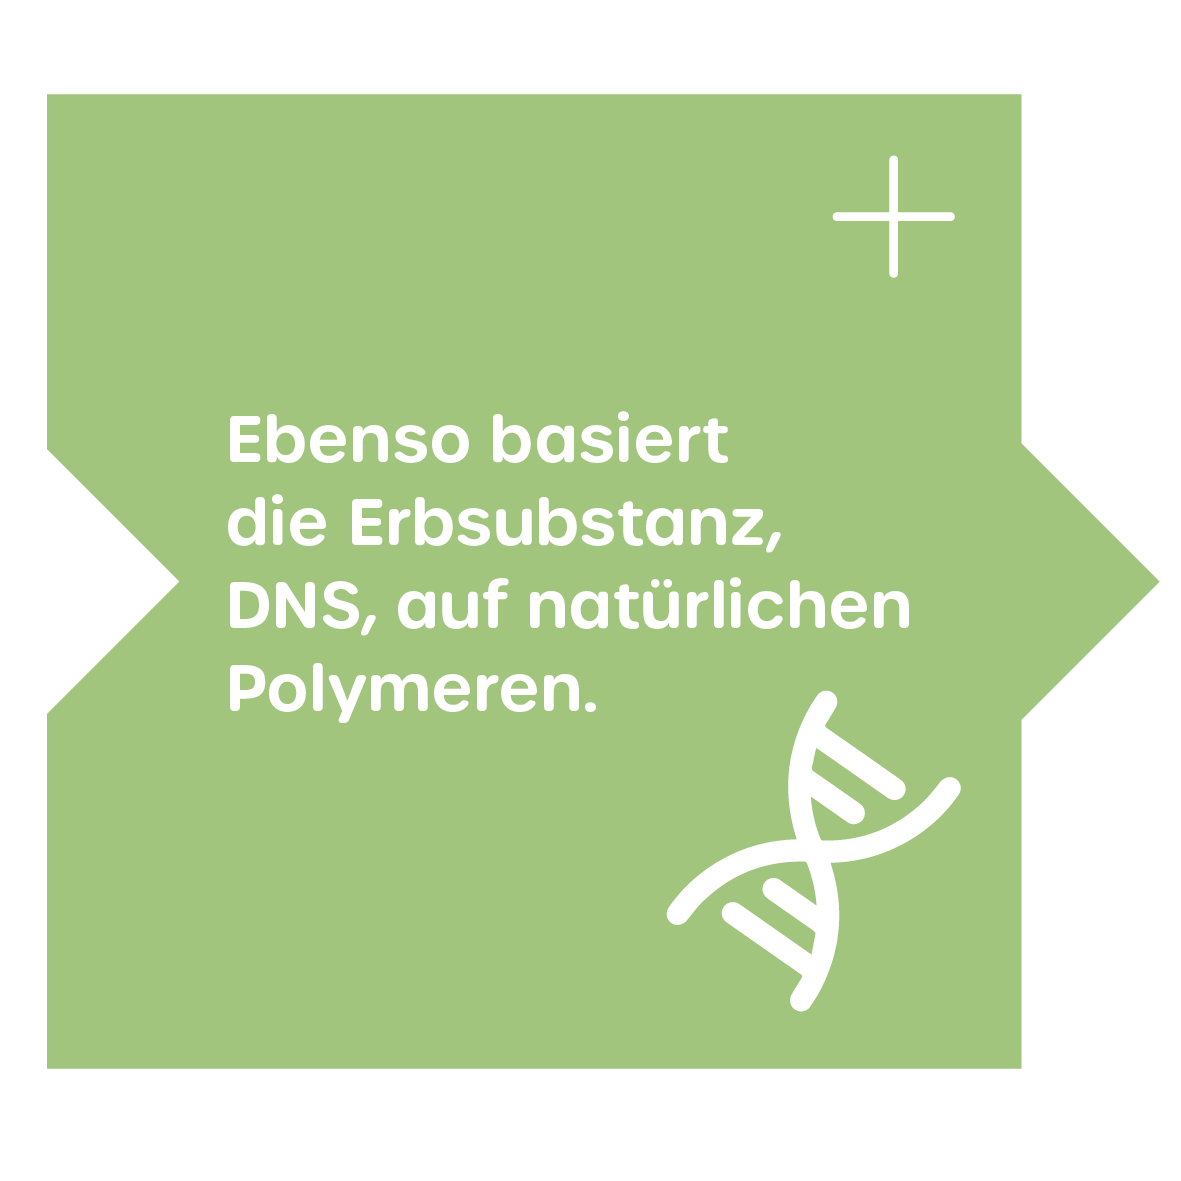 Erbsubstanz- natürliche Polymere - DNS